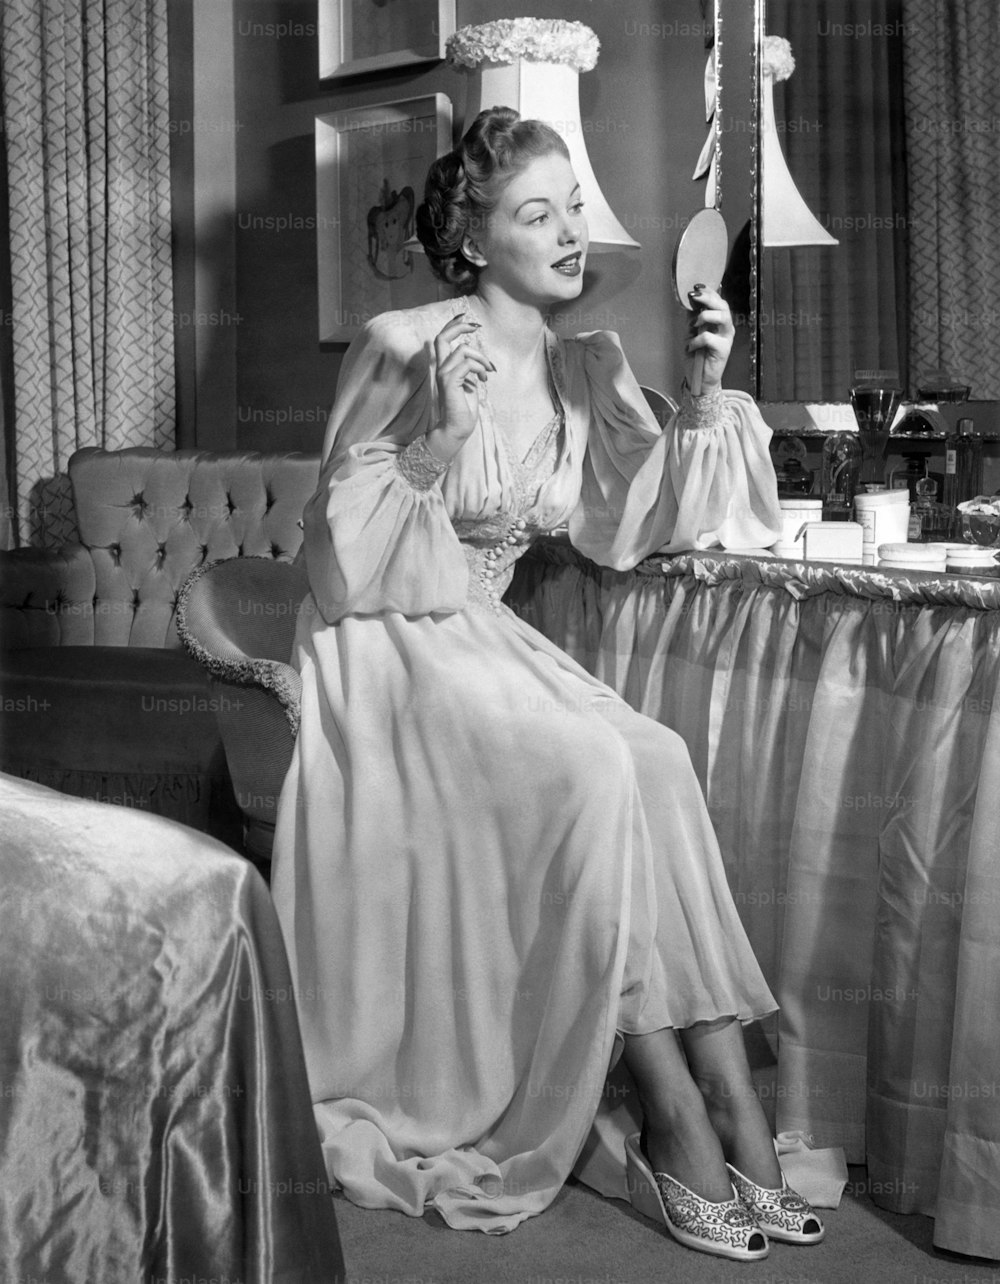 VEREINIGTE STAATEN - CIRCA 1950er Jahre: Eine Frau in ihrem Nachthemd schaut in den Spiegel.